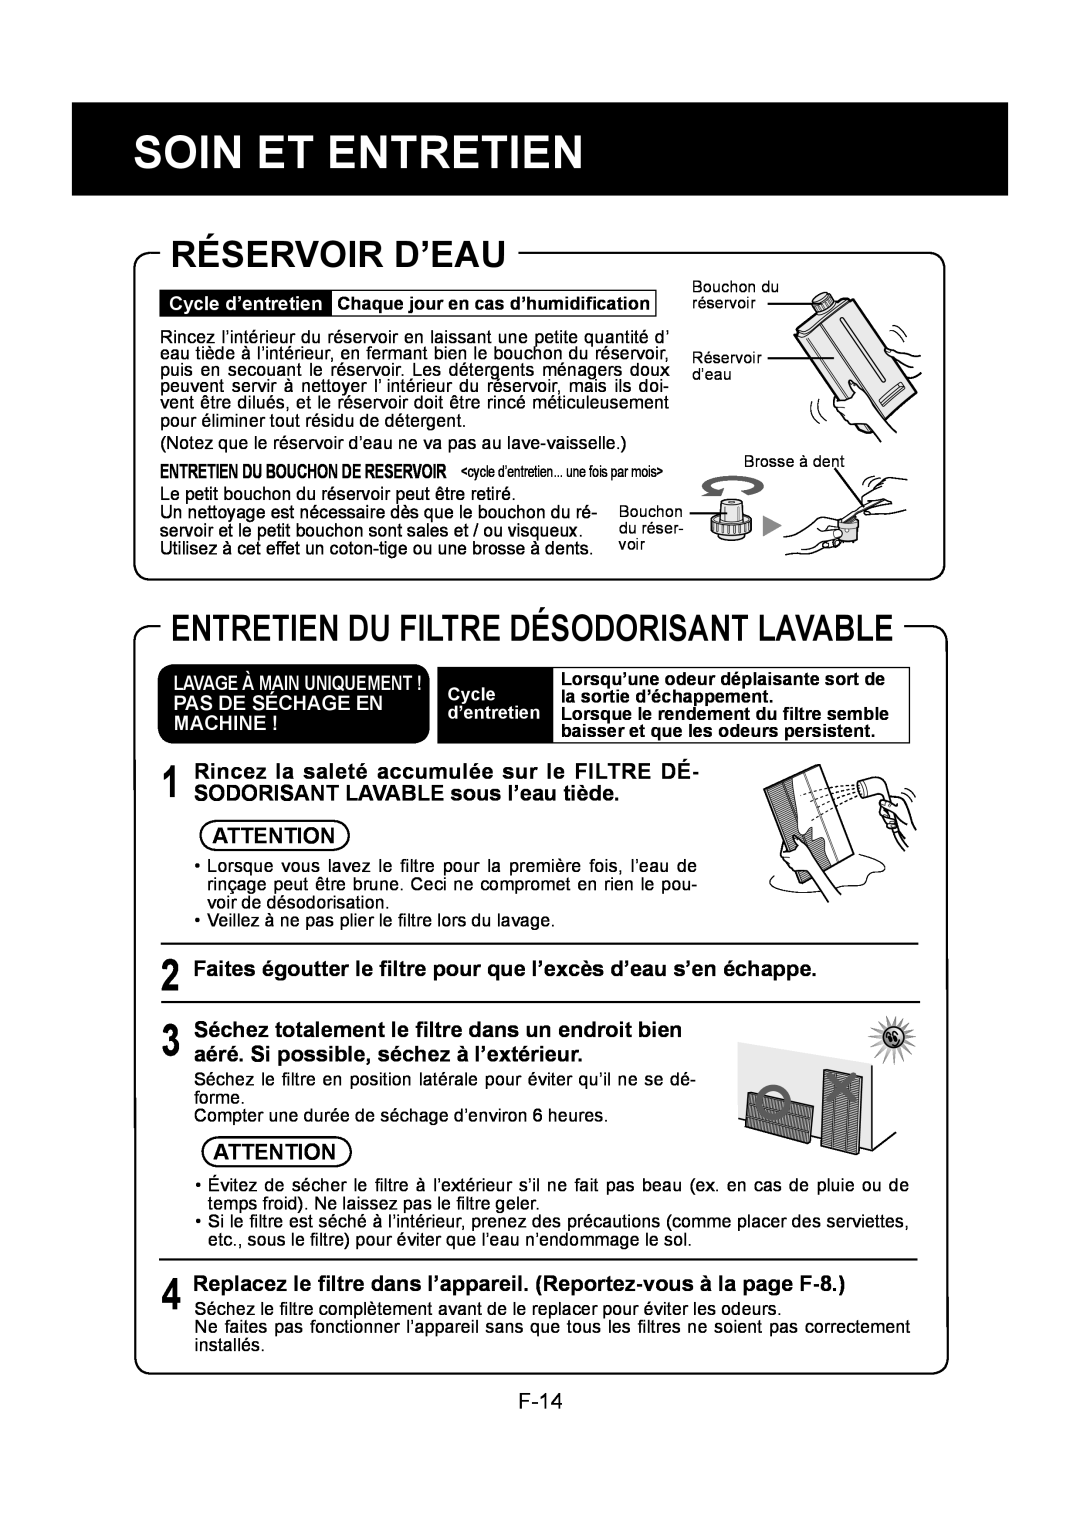 Sharp KC-860U operation manual Réservoir D’Eau, Entretien Du Filtre Désodorisant Lavable, Soin Et Entretien 